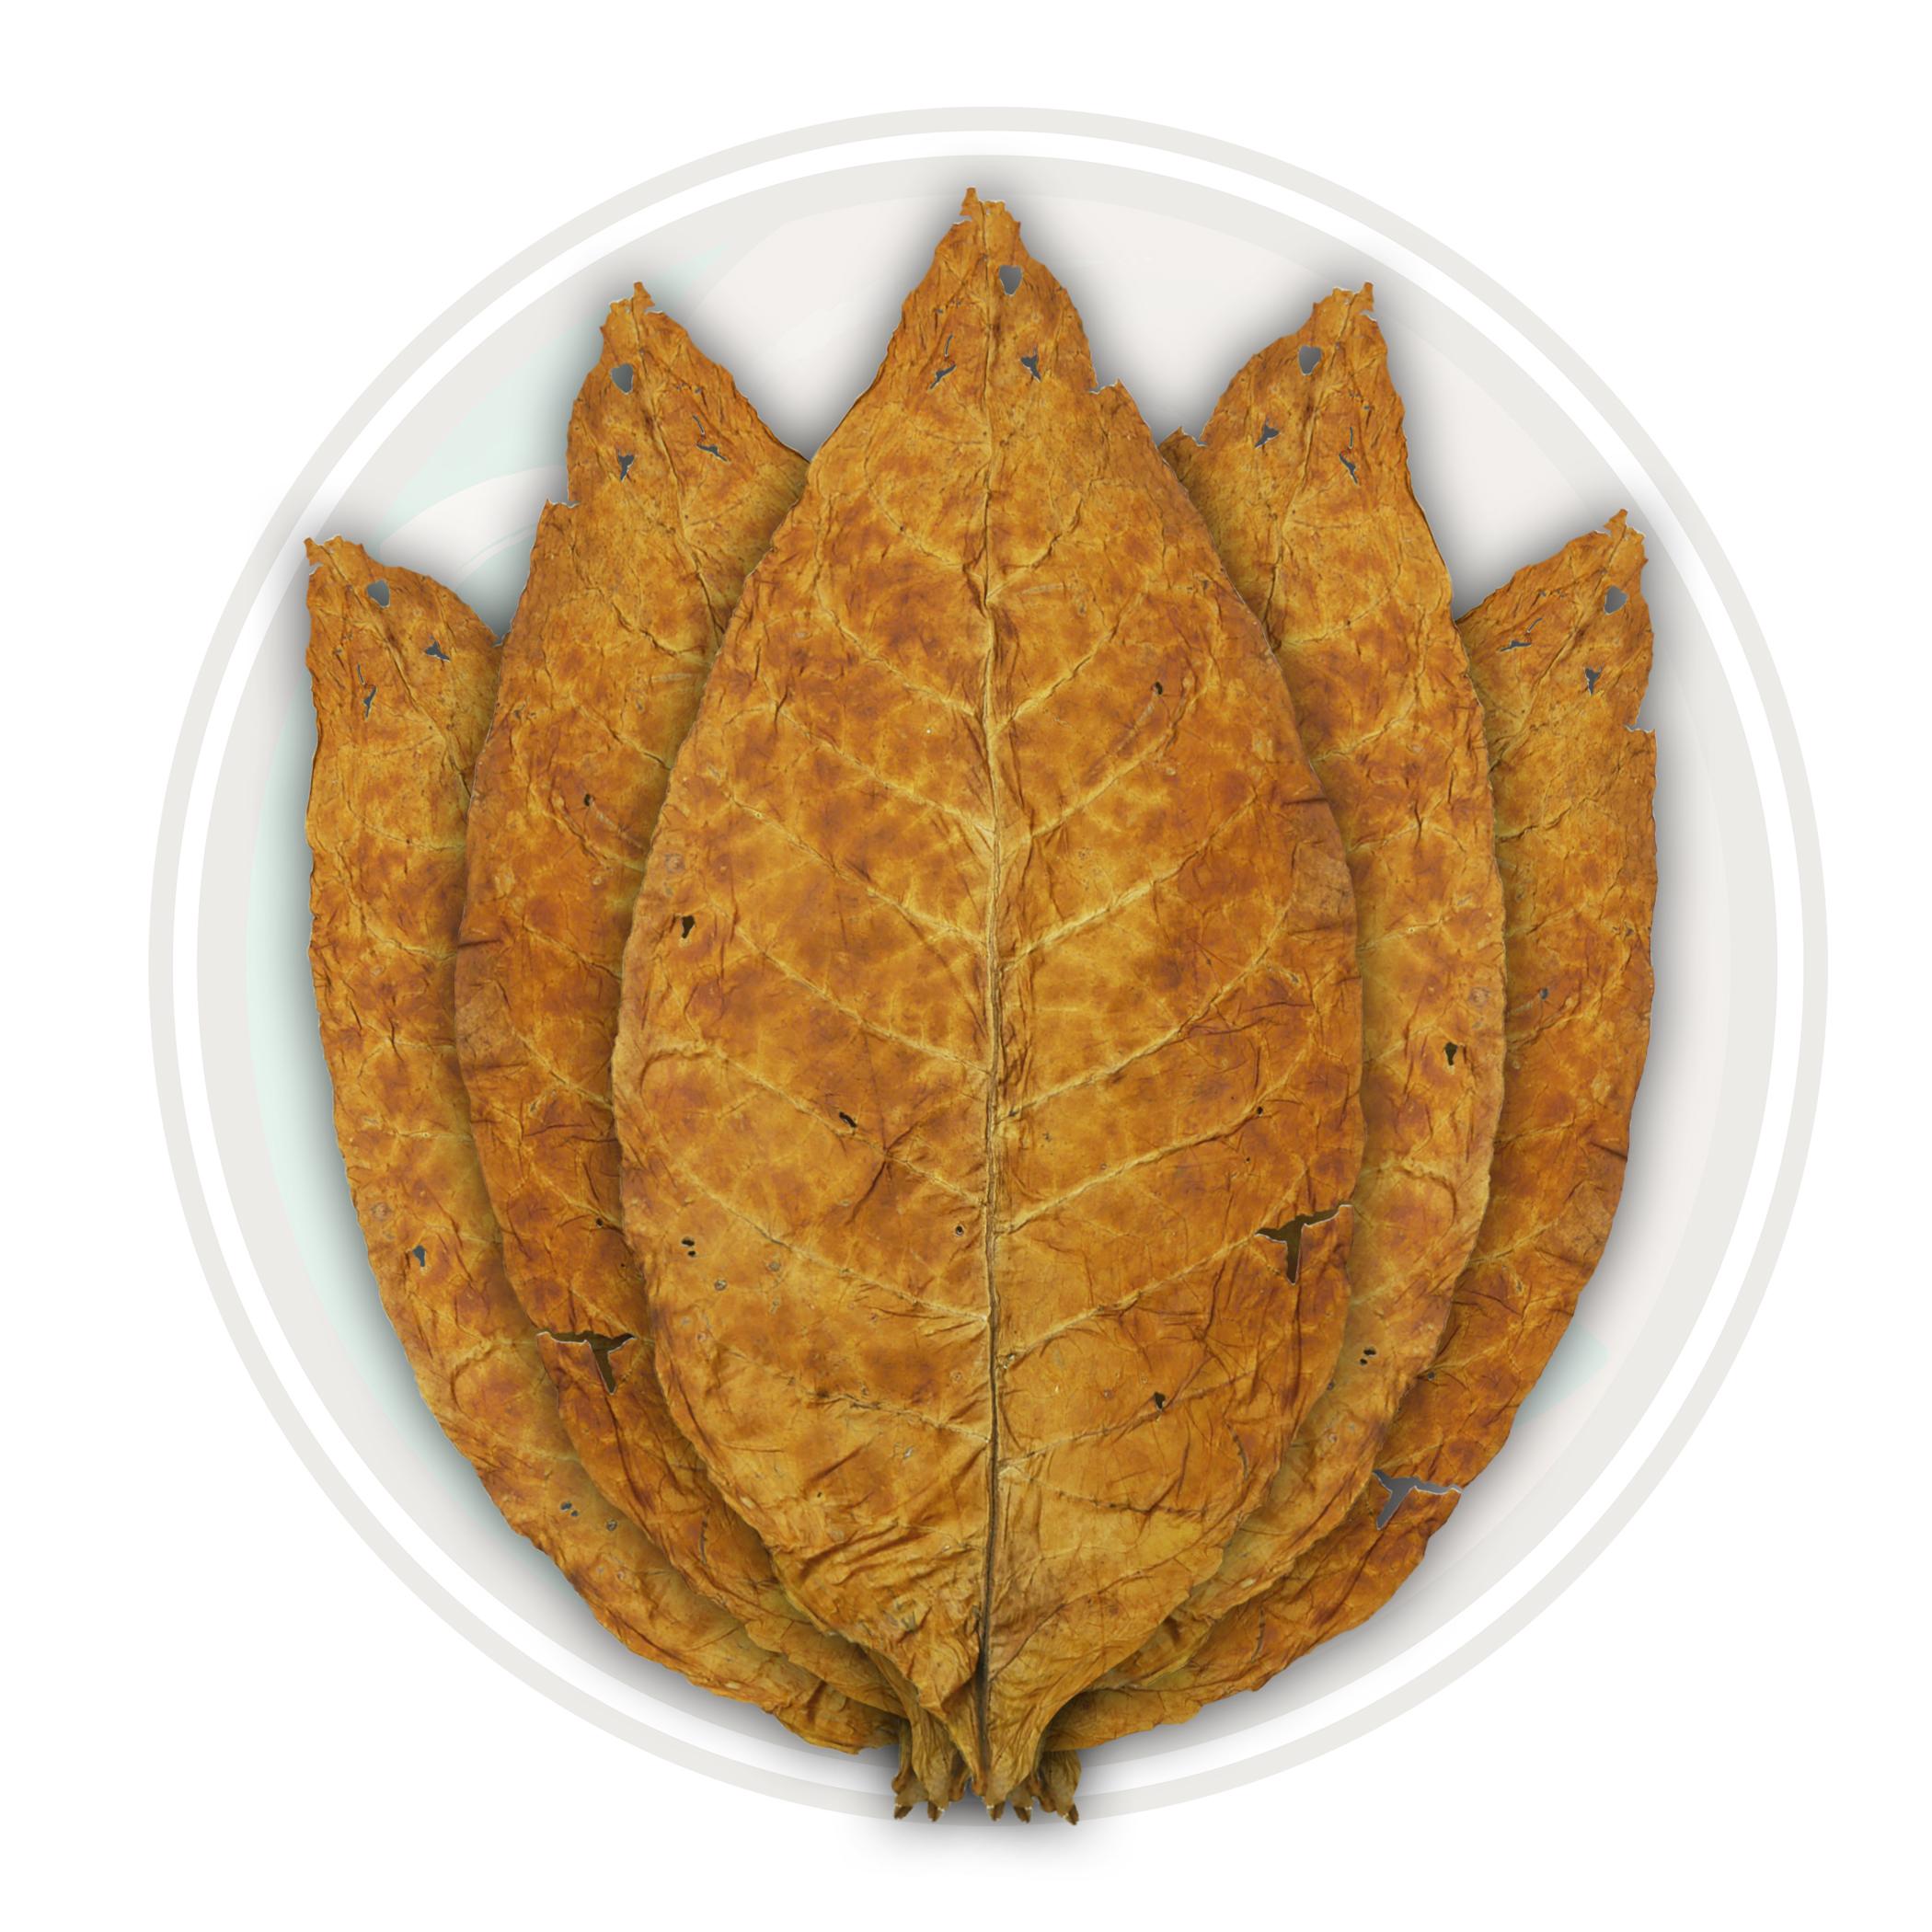 Brightleaf Virginia Flue Cured Tobacco Leaf - Smooth Whole Leaf